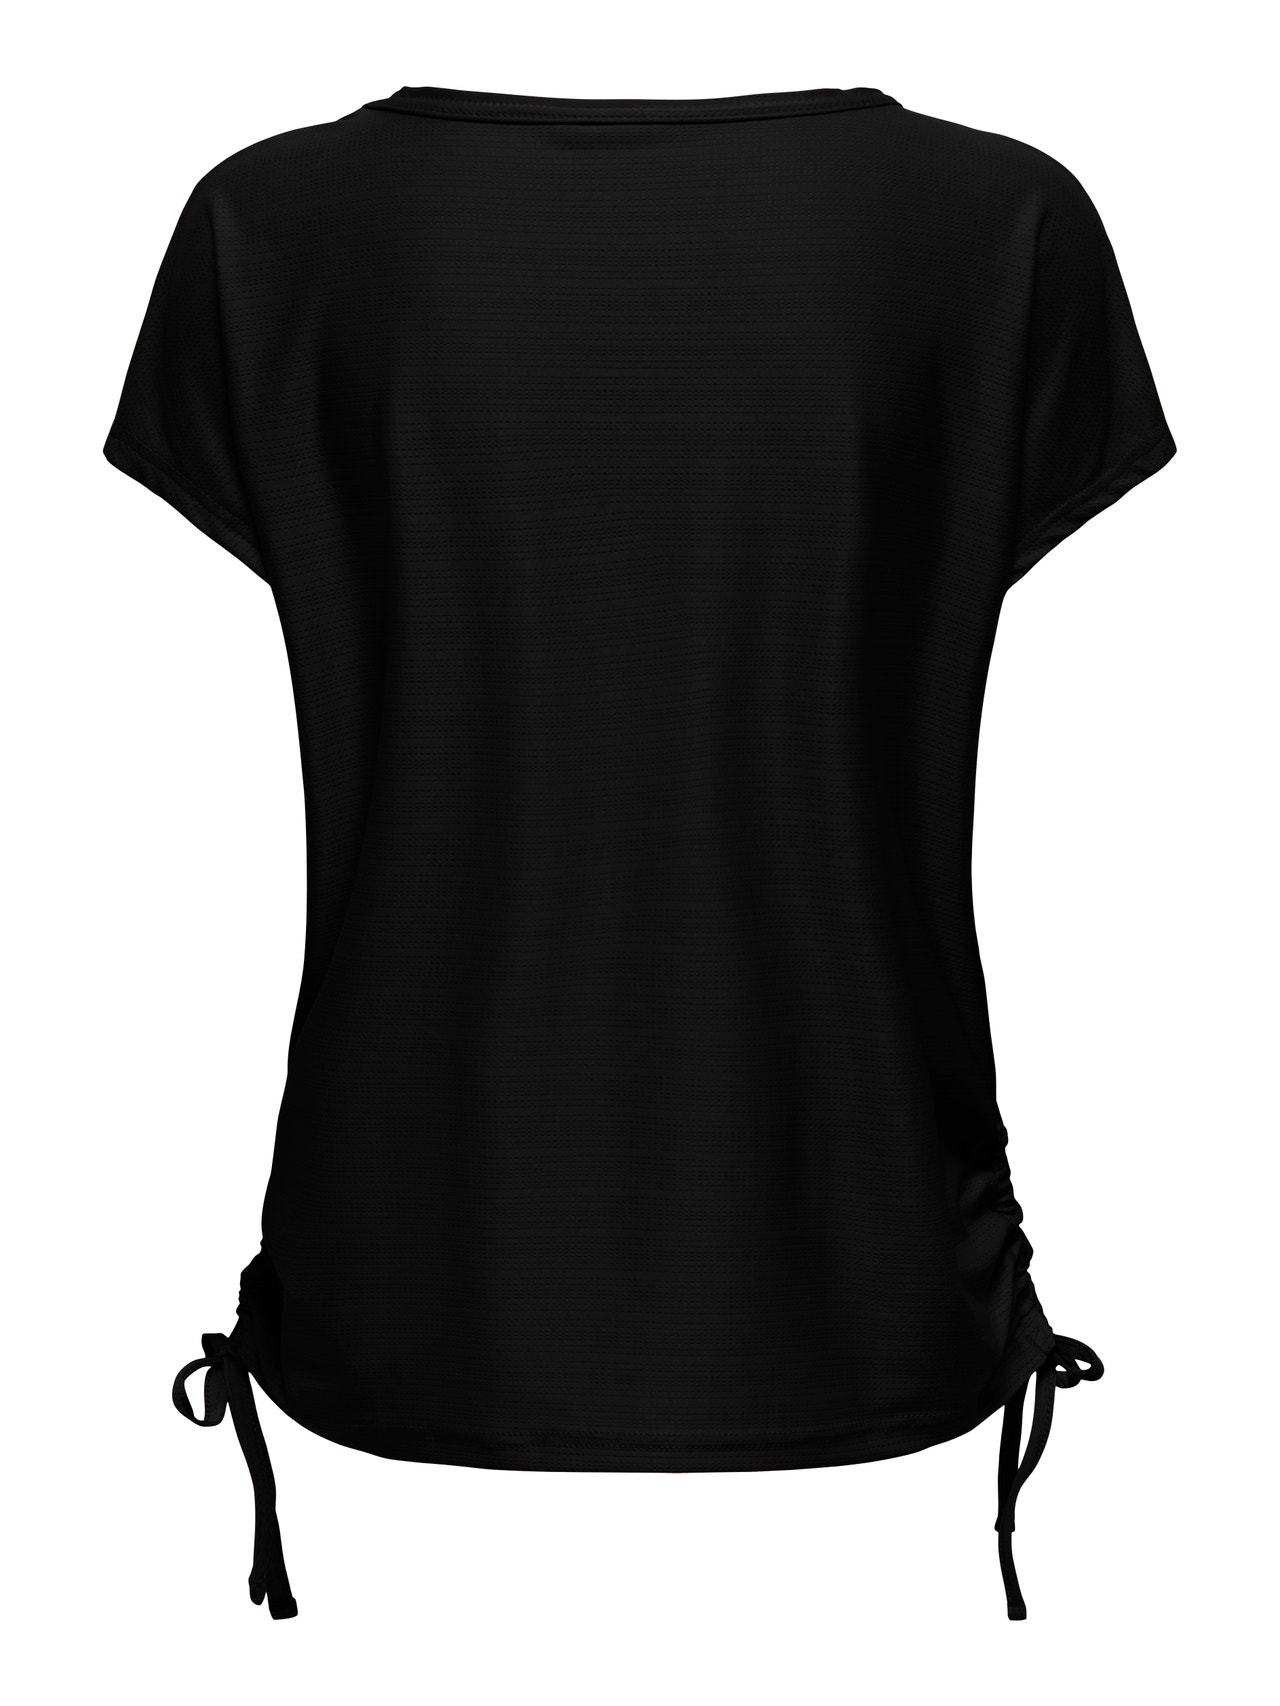 ONLY Loose Fit V-Neck T-Shirt -Black - 15298795